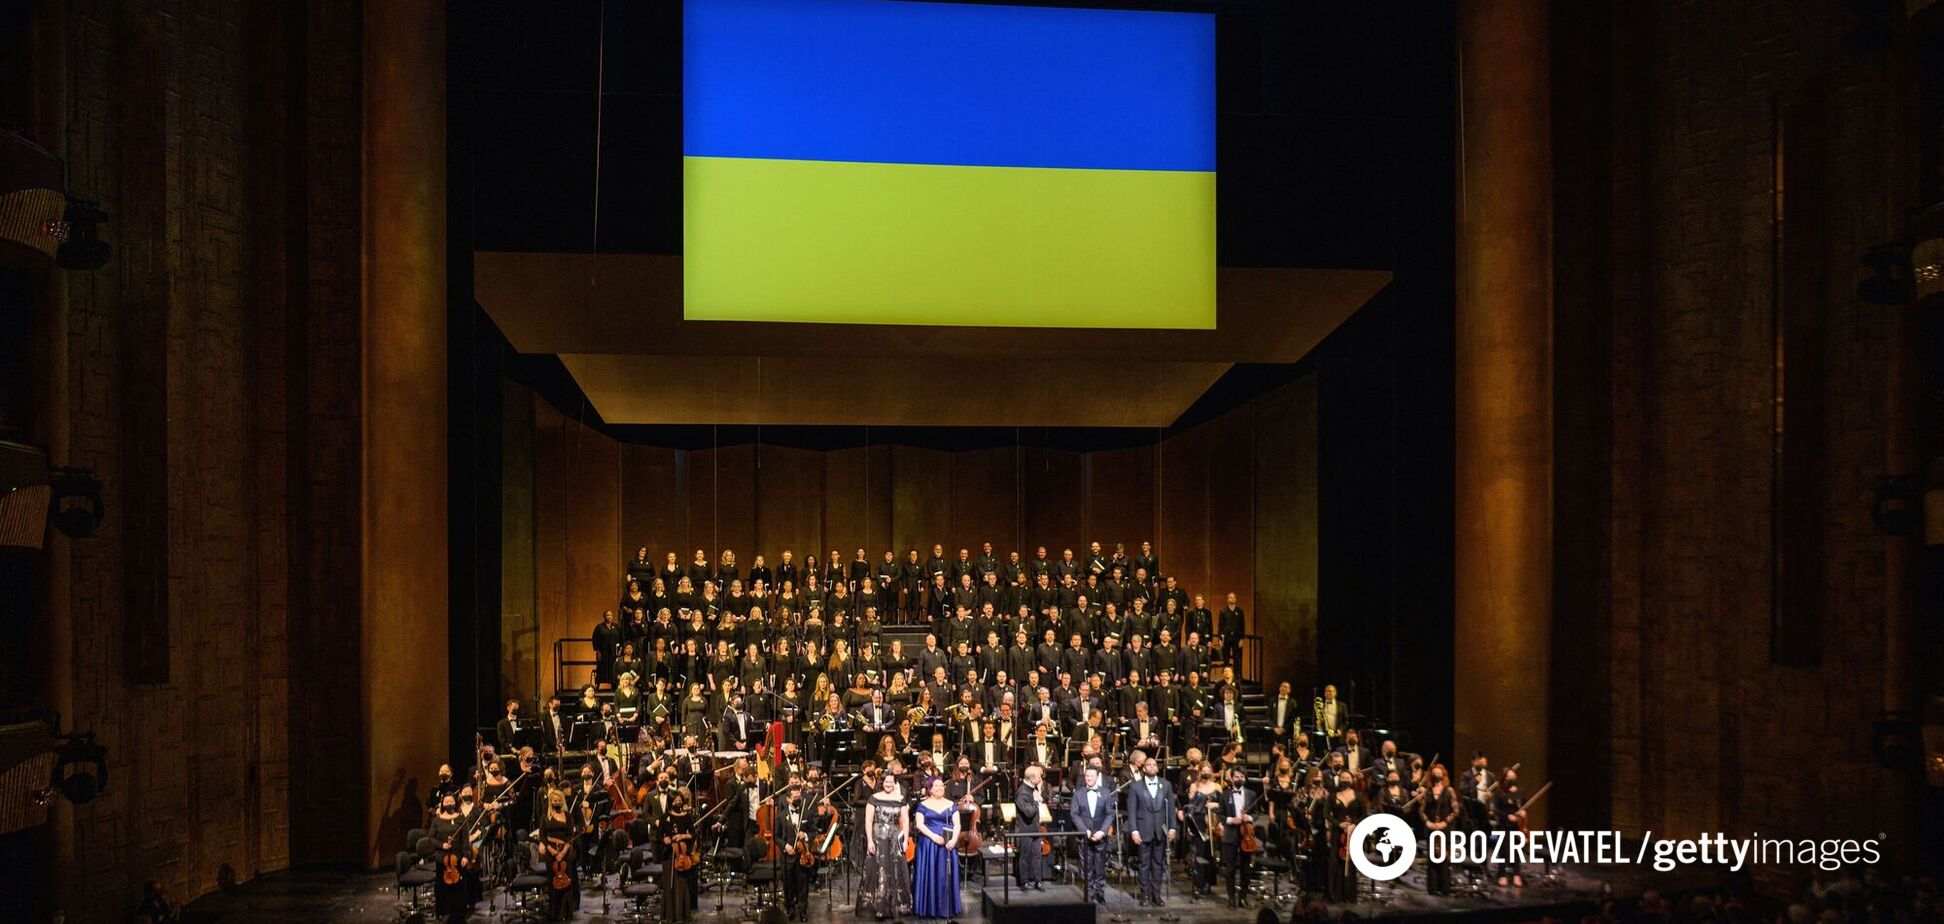 'Метрополитен-опера' дала концерт в поддержку Украины: количество зрителей шокировало даже организаторов